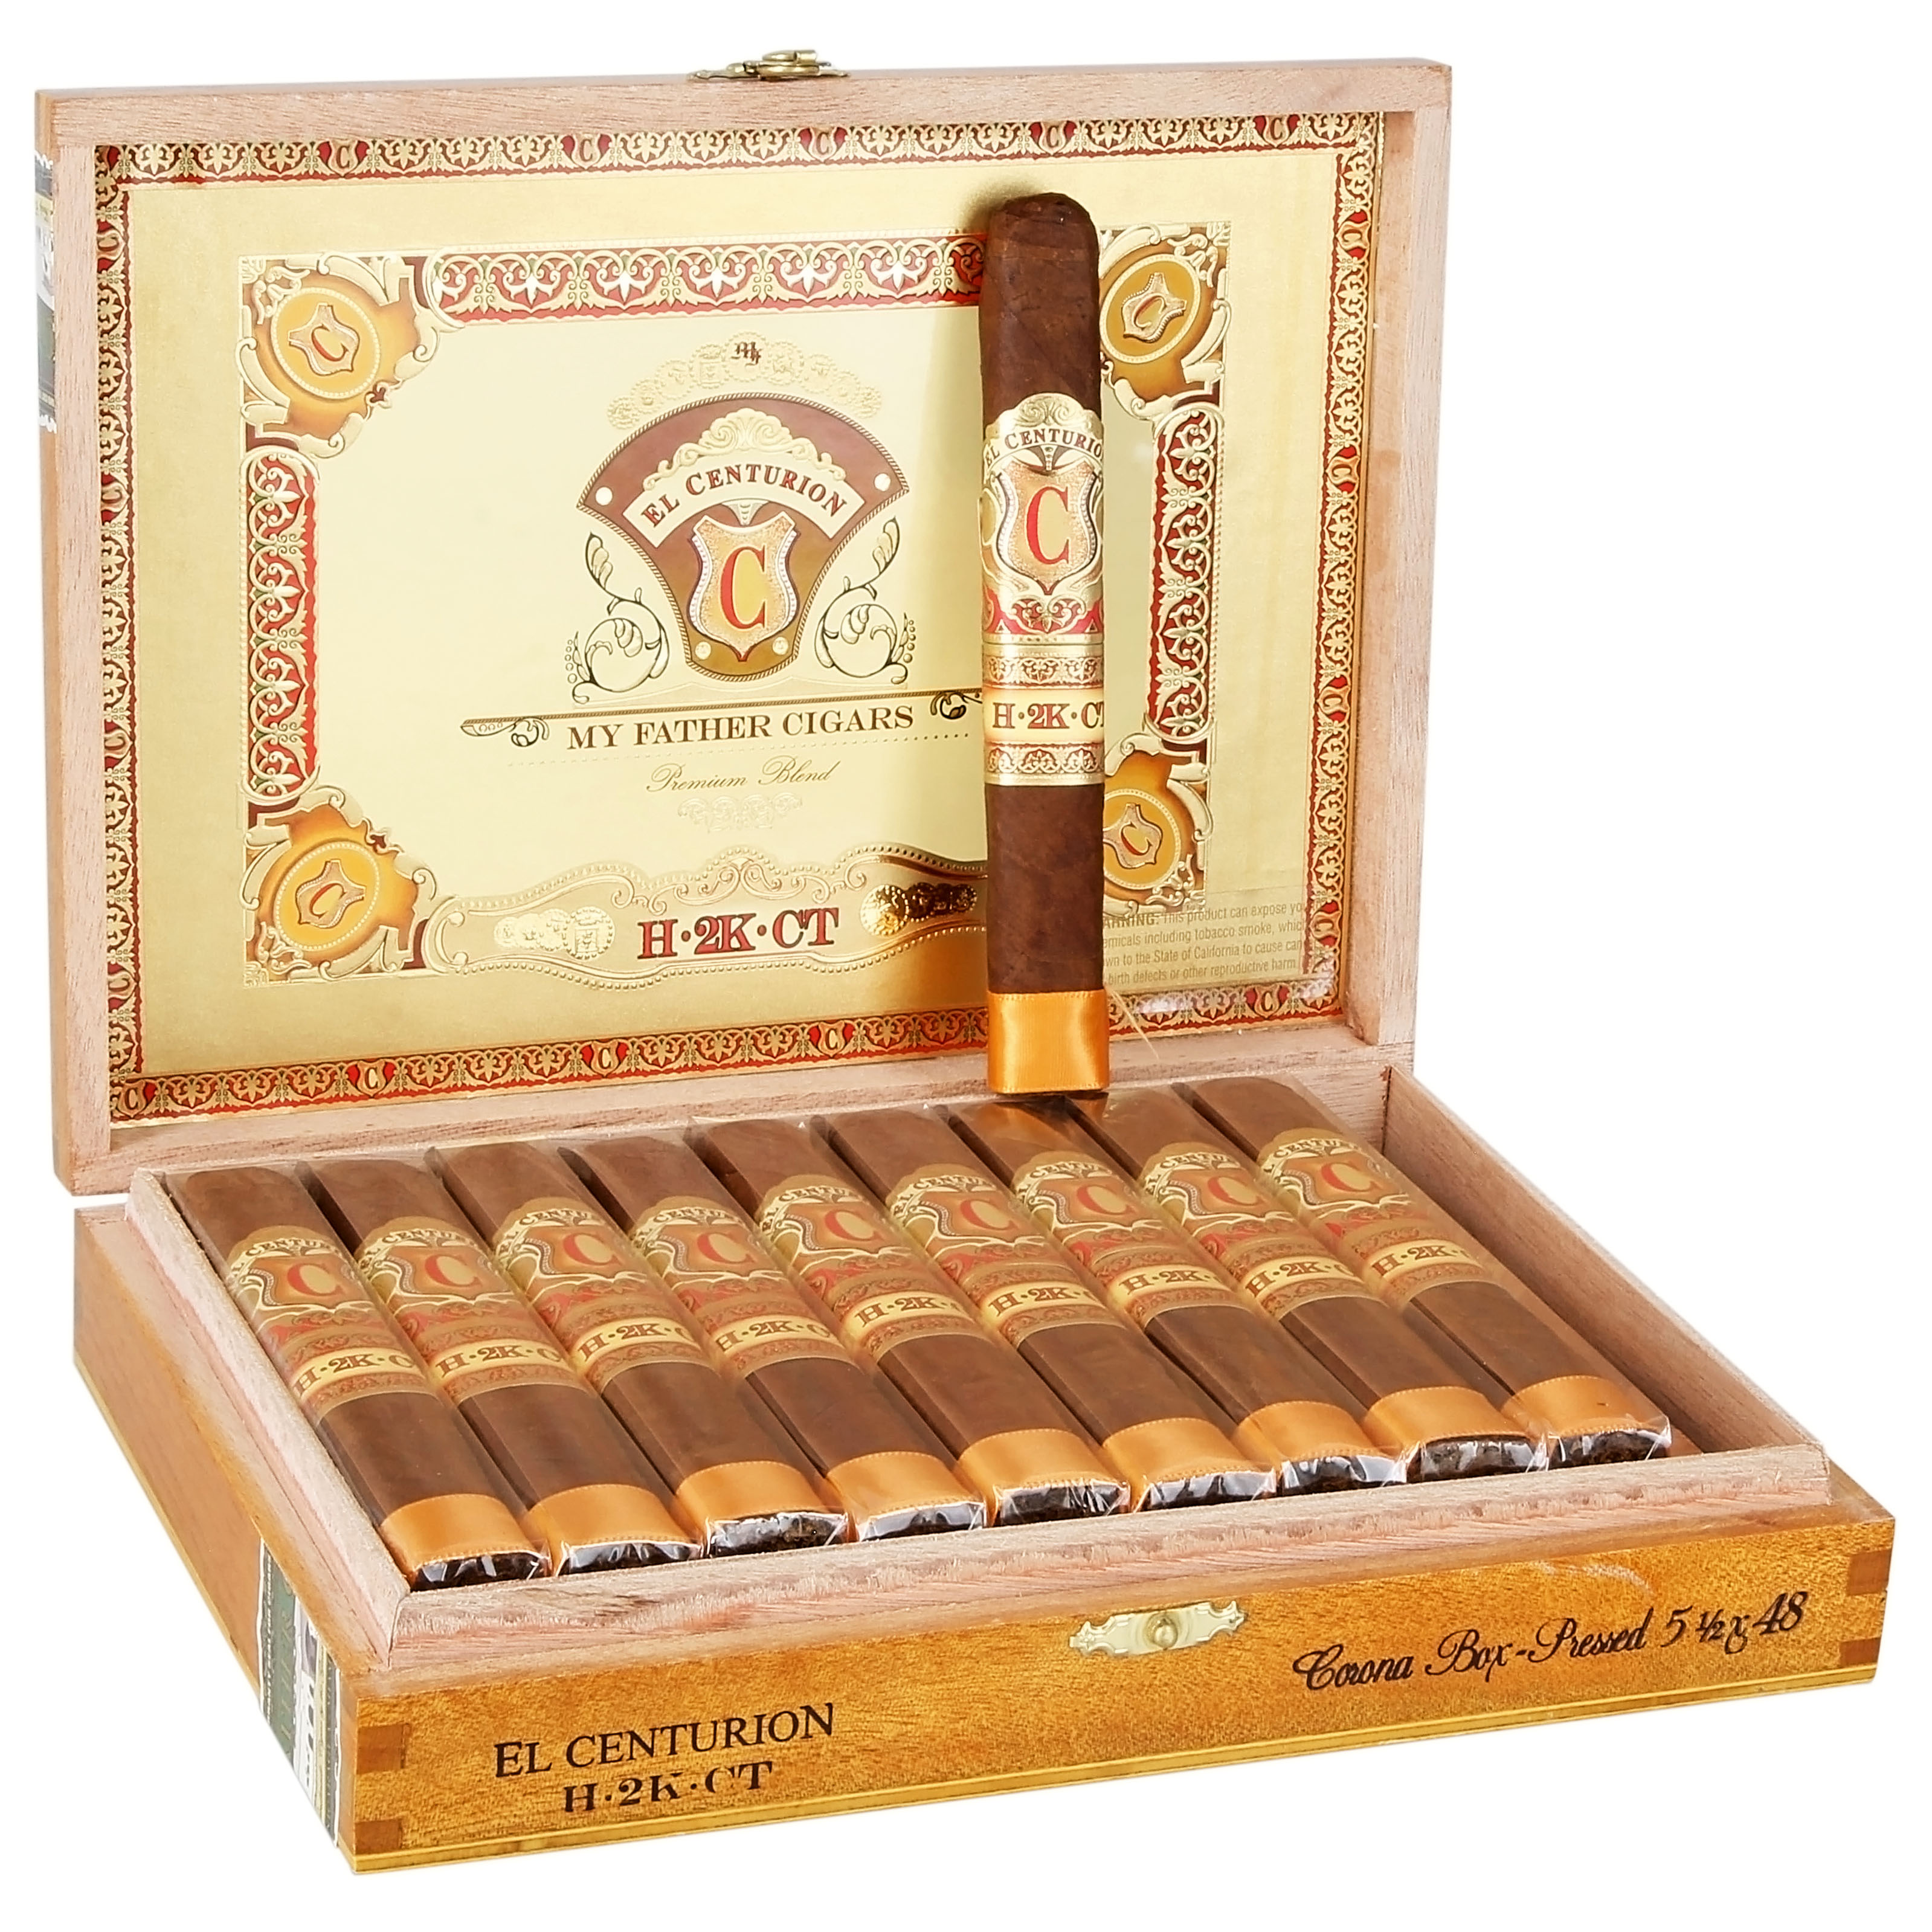 El Centurion My Father Cigars Empty Wood Cigar Box 9 1/2 x 7 x 1 1/2” 